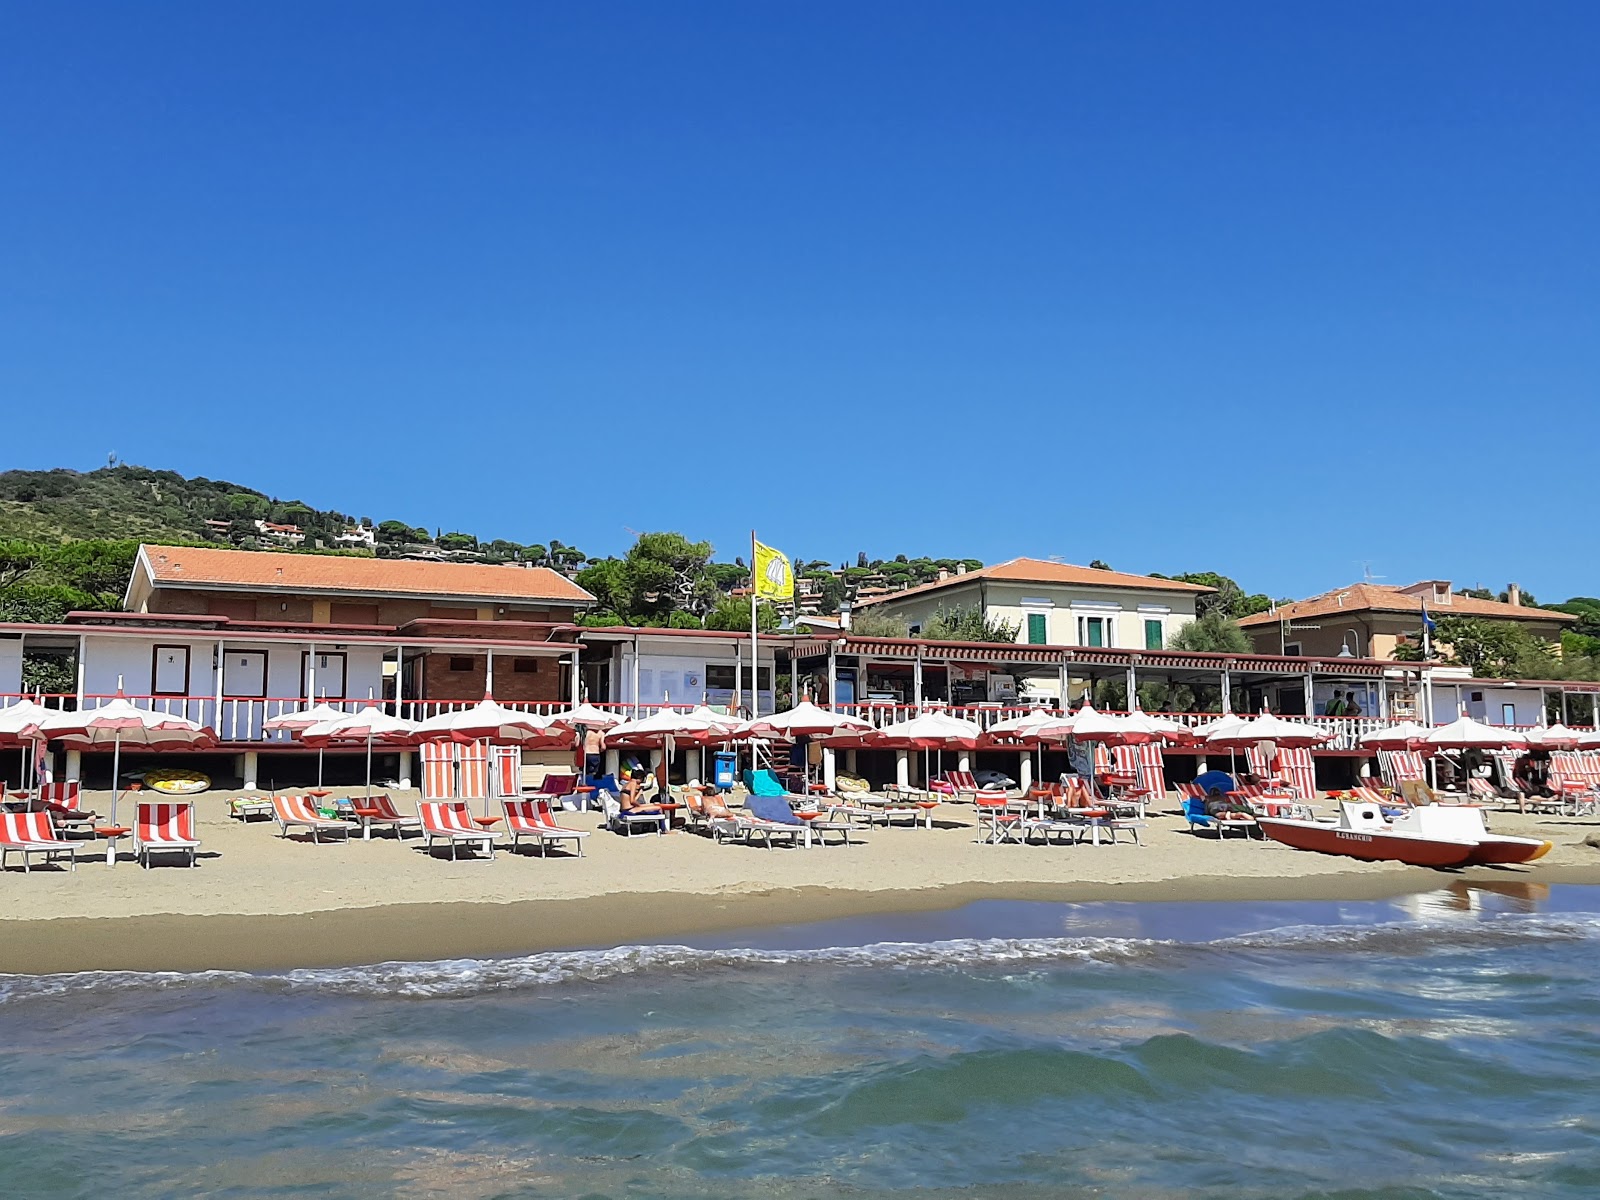 Foto af Castiglione della Pescaia - populært sted blandt afslapningskendere